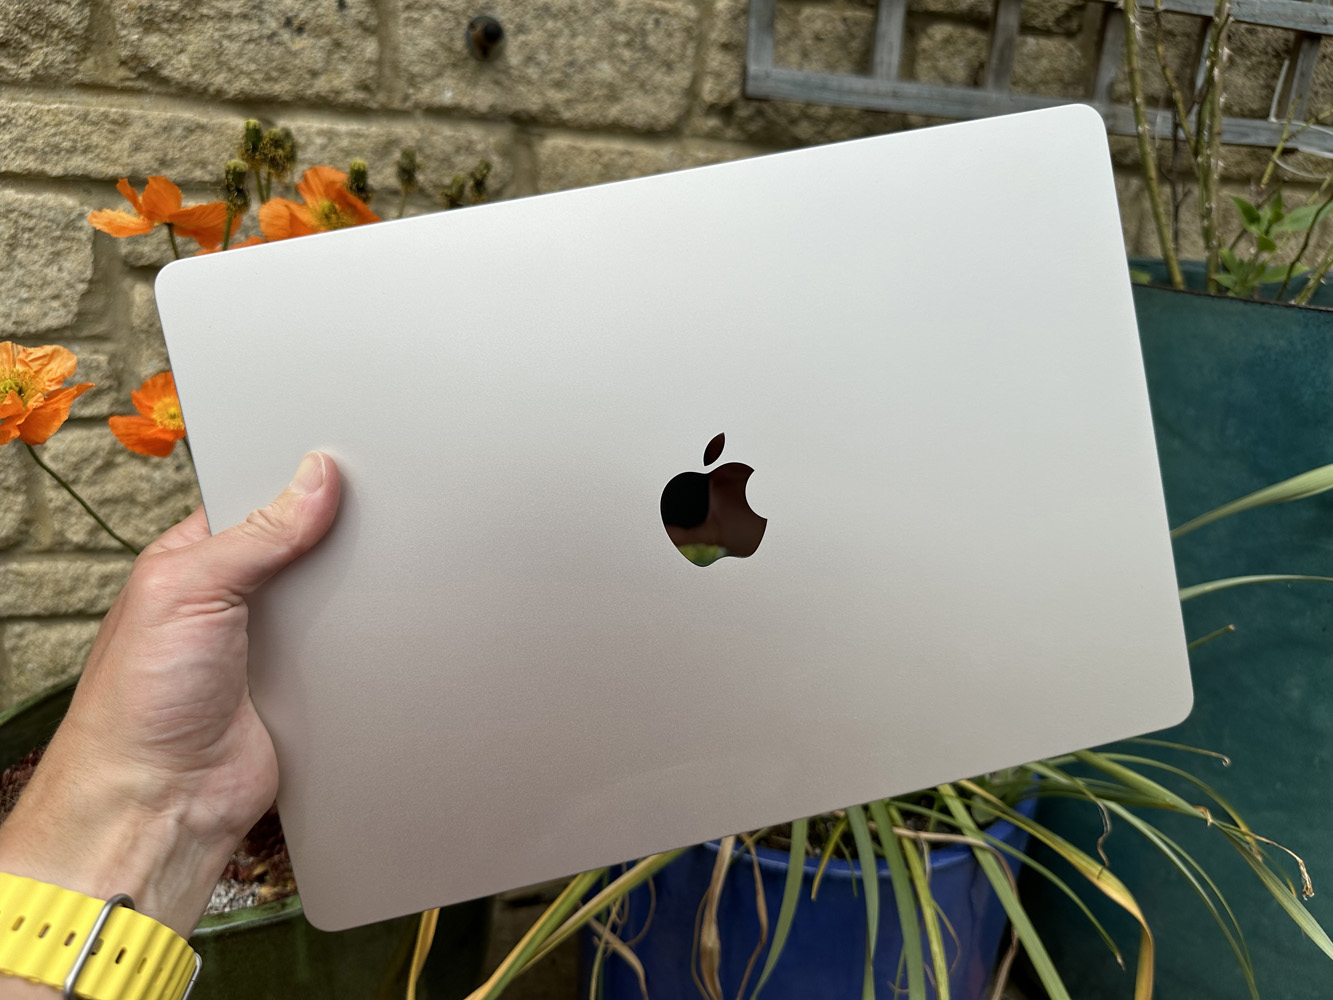 MacBook Air 15in review